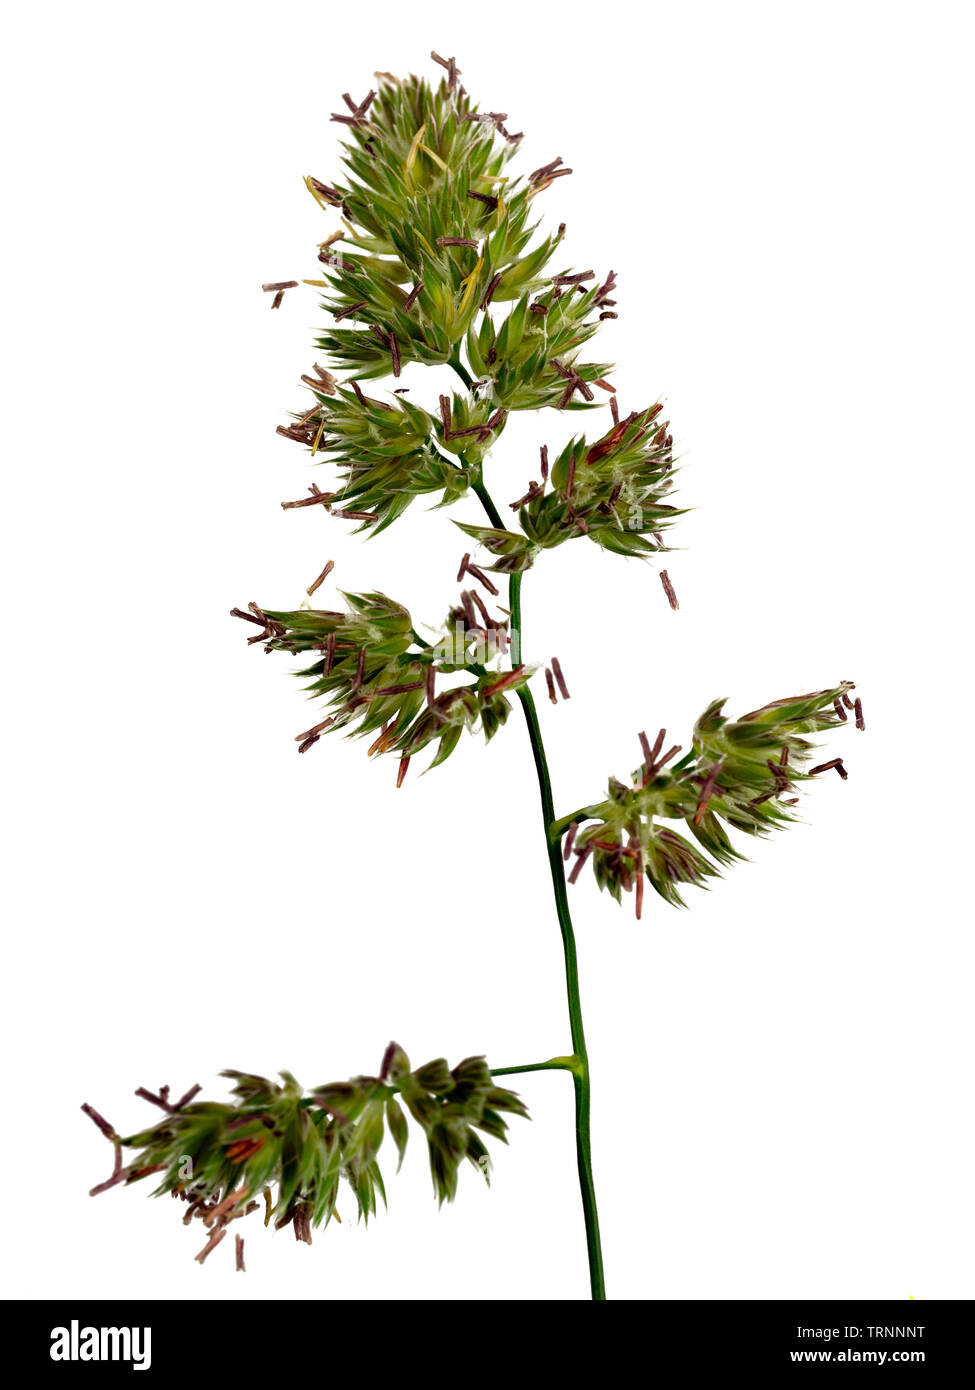 Testa di fioritura del dactylis erba, Dactylis glomerata, su sfondo bianco Foto Stock